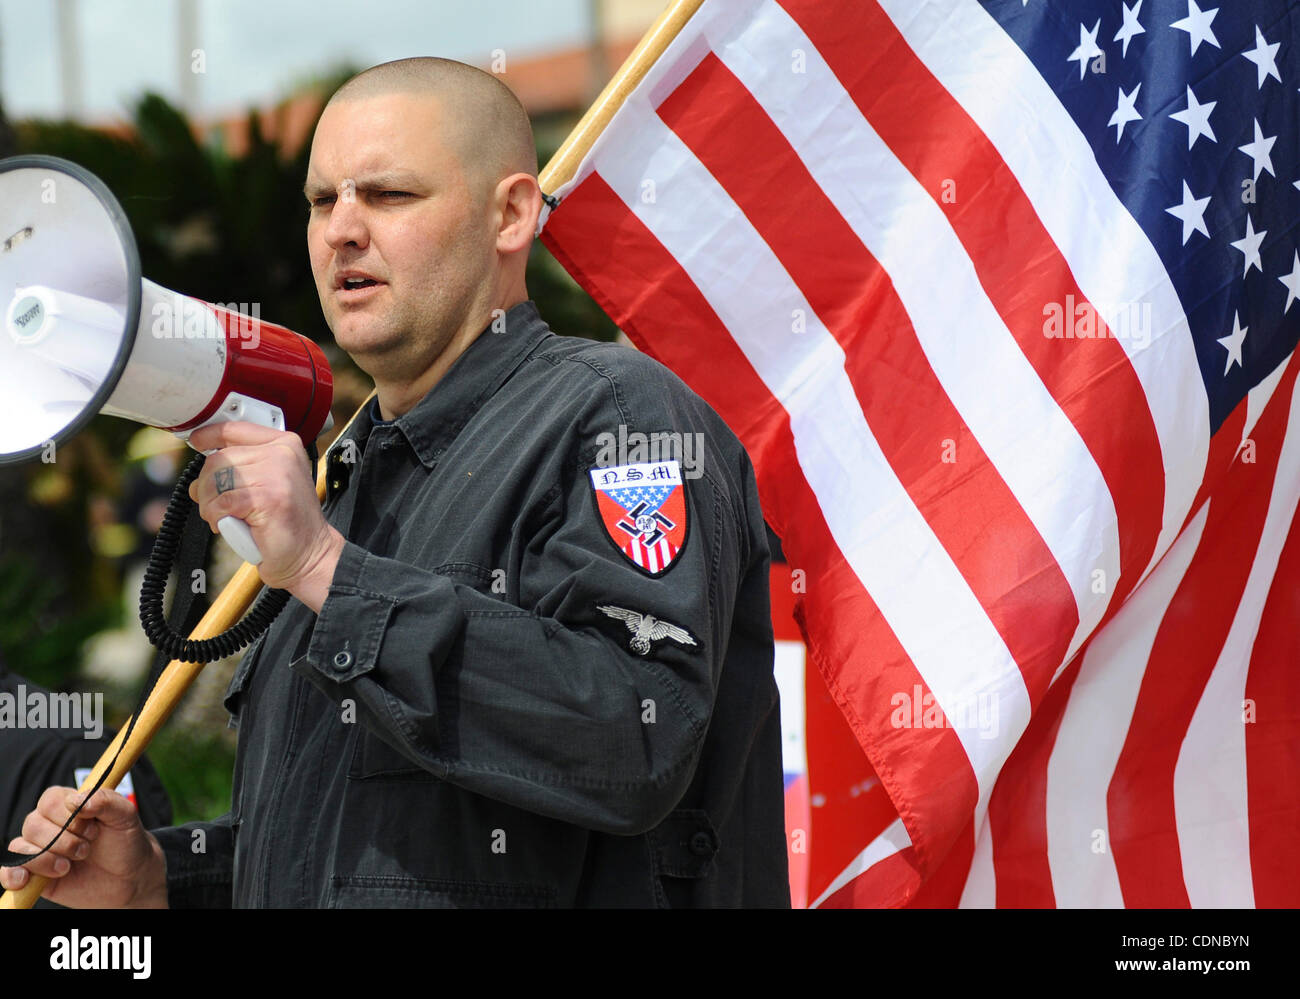 Leader neonazista Jeffrey Hall, visto che portano un rally in Claremont, California nel marzo del 2011, è stato colpito a morte mentre dorme al suo Riverside home 1 Maggio. (ZUMA Press/Josh Edelson) Foto Stock